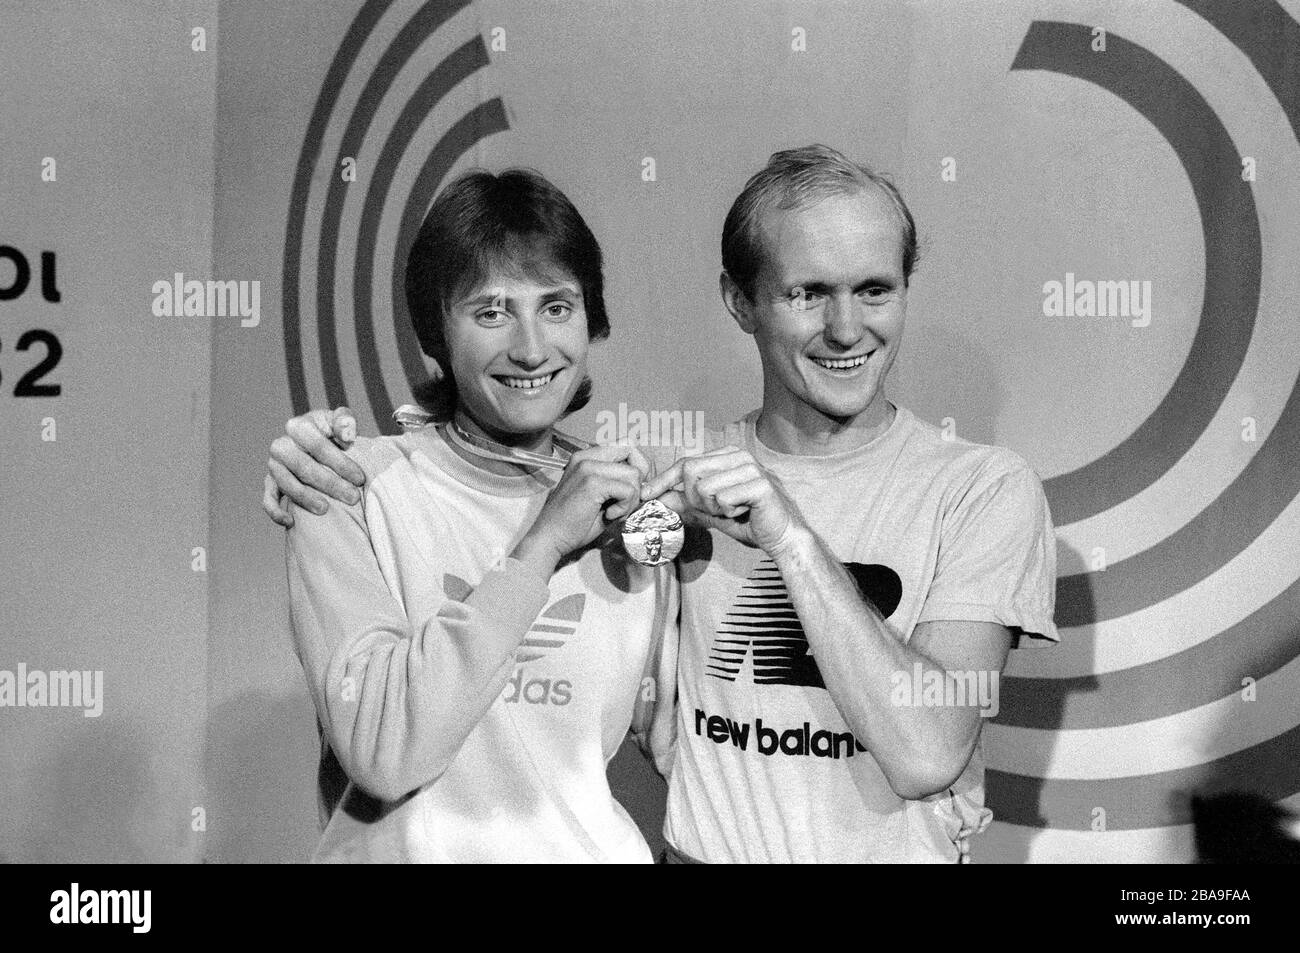 ANN-LOUISE SKOGLUND atleta svedese pista e campo che ha vinto 400 m hurdle nel campionato europeo di Atene Grecia 1982 e si congratula con Bo Gustavsson partecipante svedese a Walk 50 km e medaglia di bronzo Foto Stock